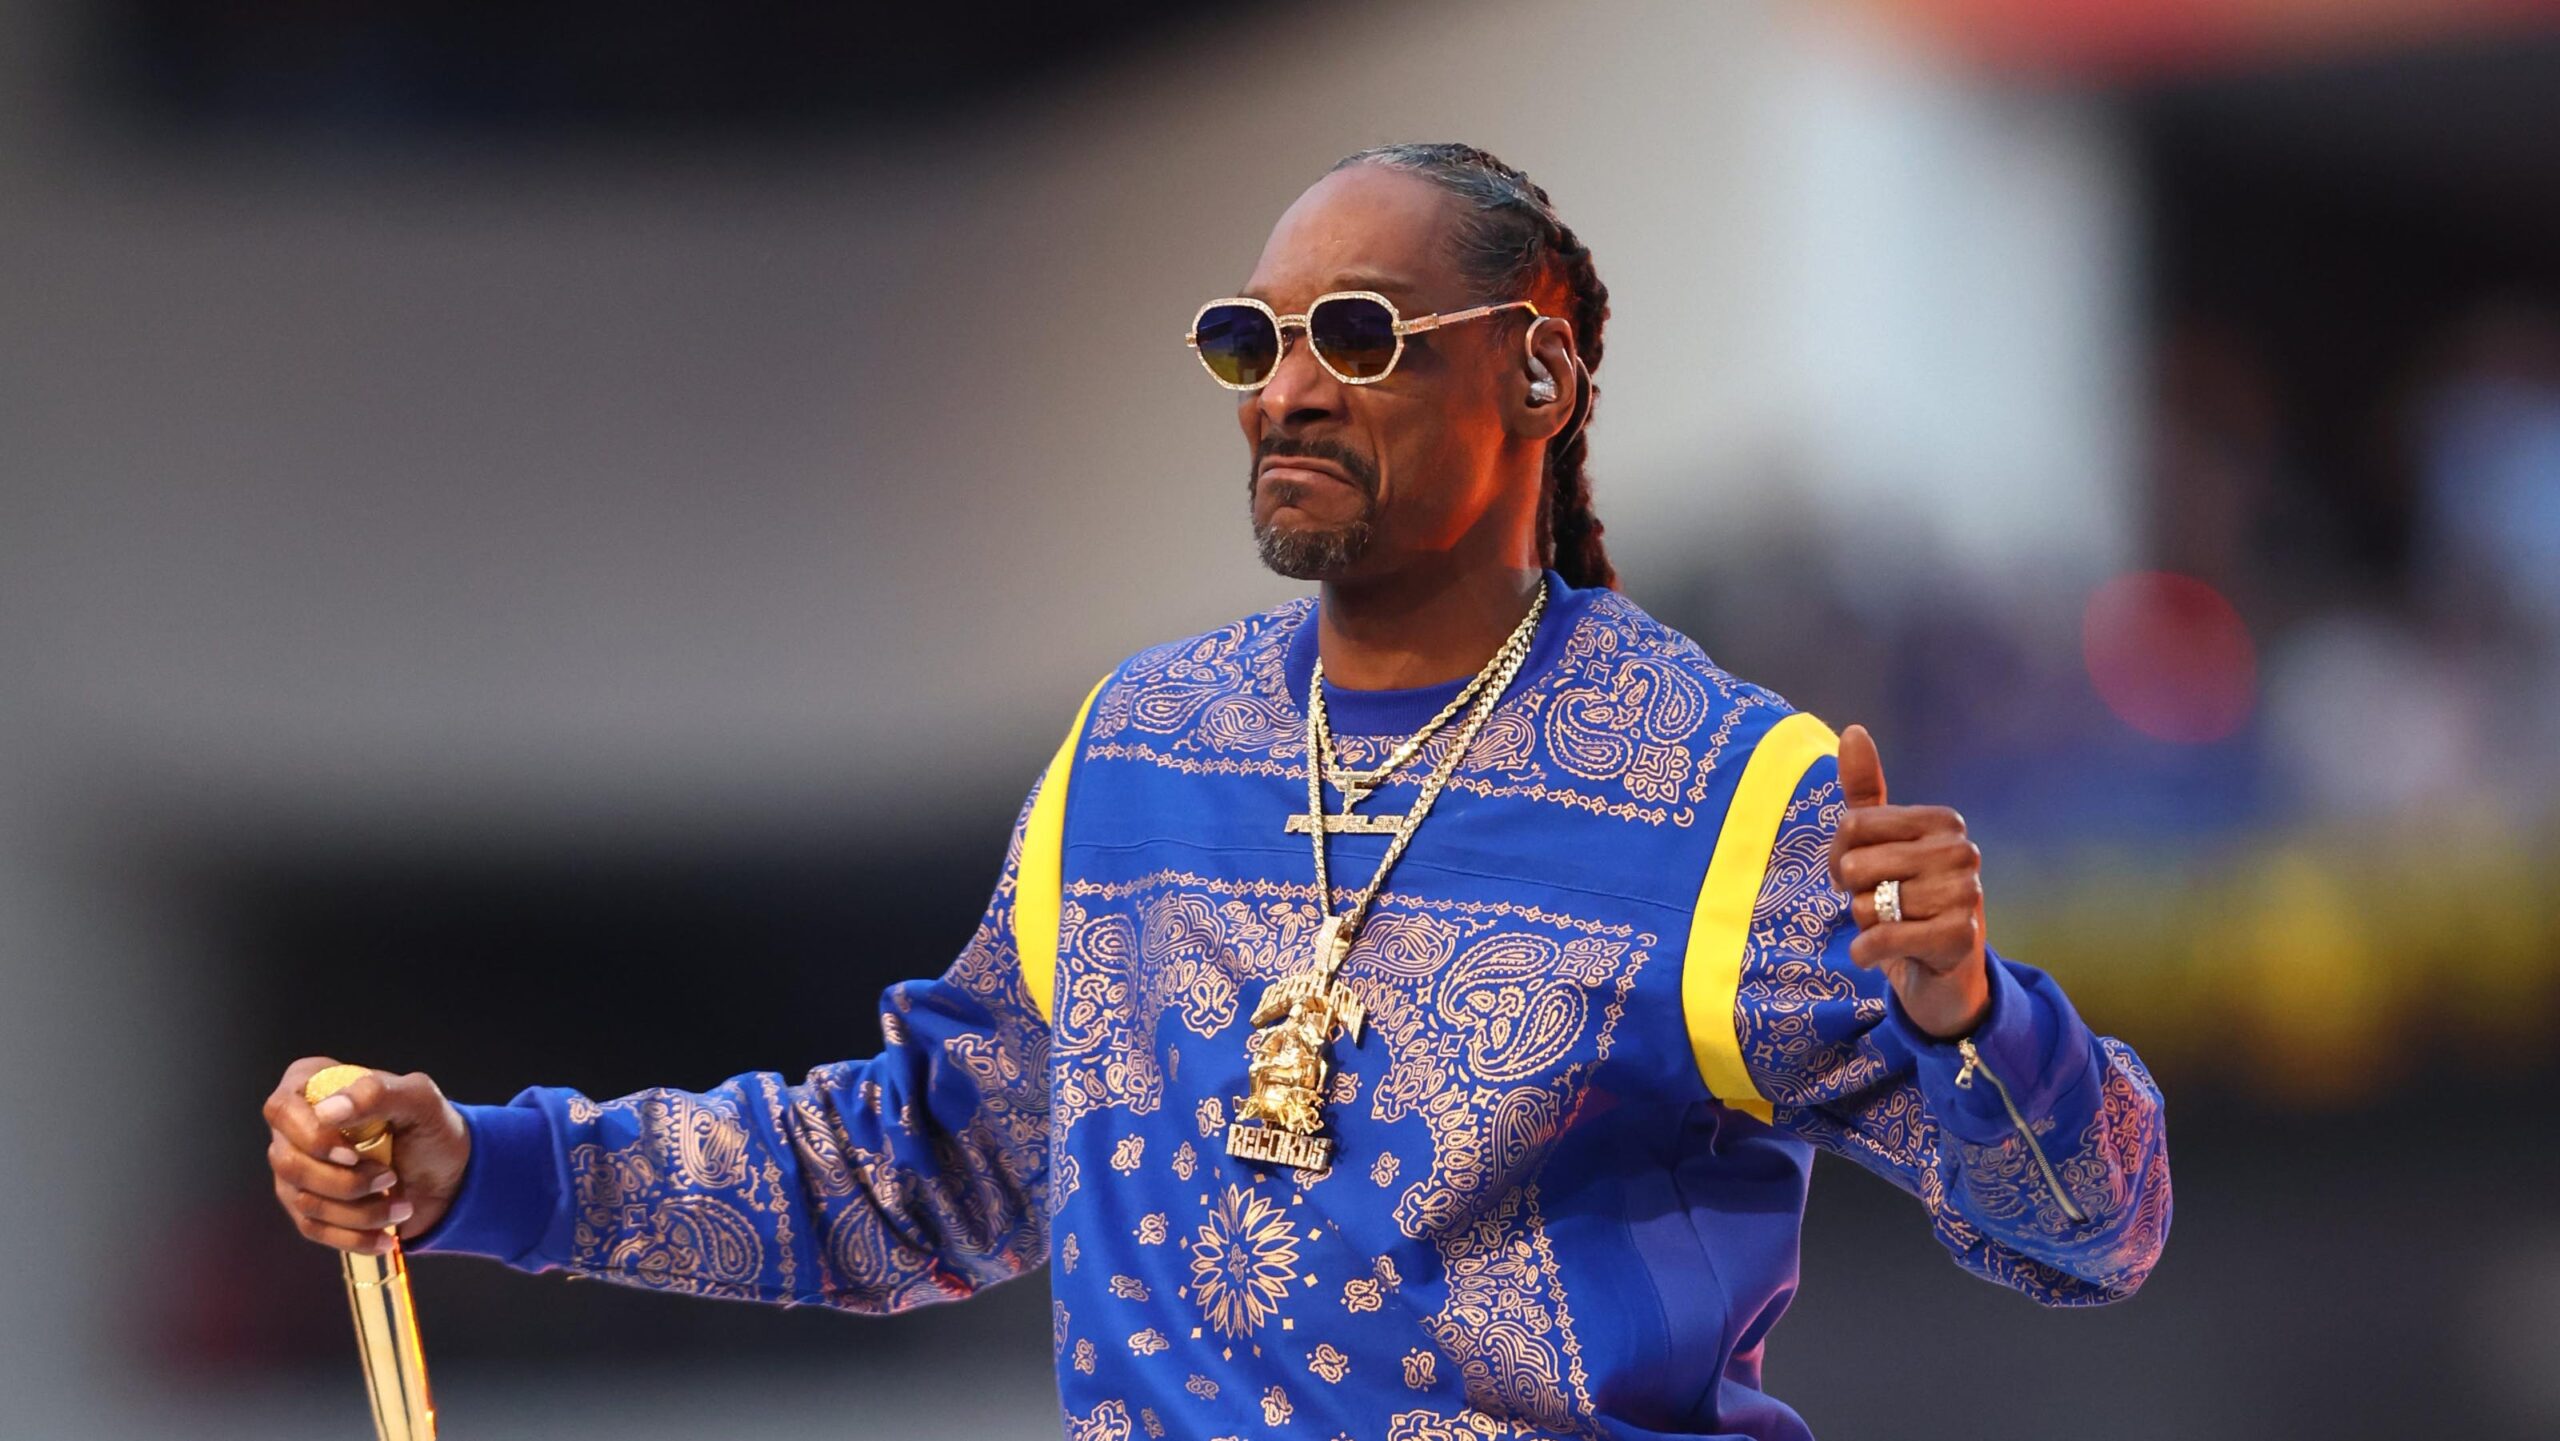 Aspectos destacados de la carrera musical de Snoop Dogg